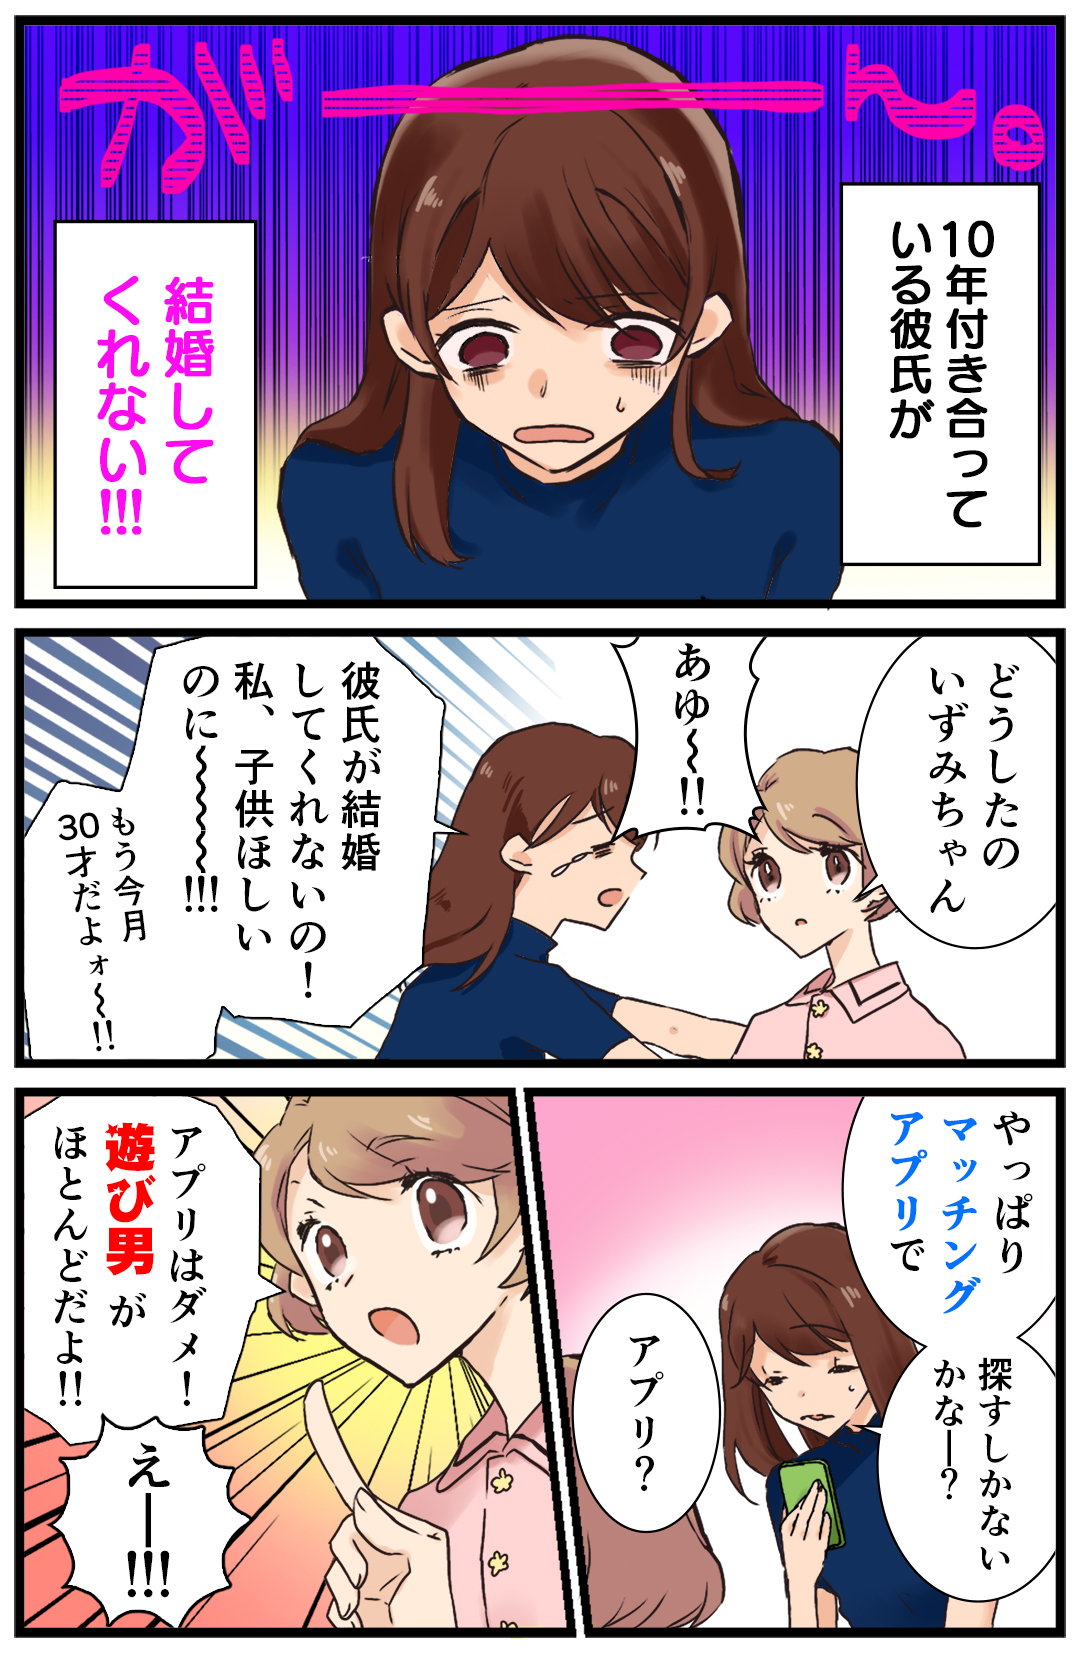 結婚相談所漫画1 (1)